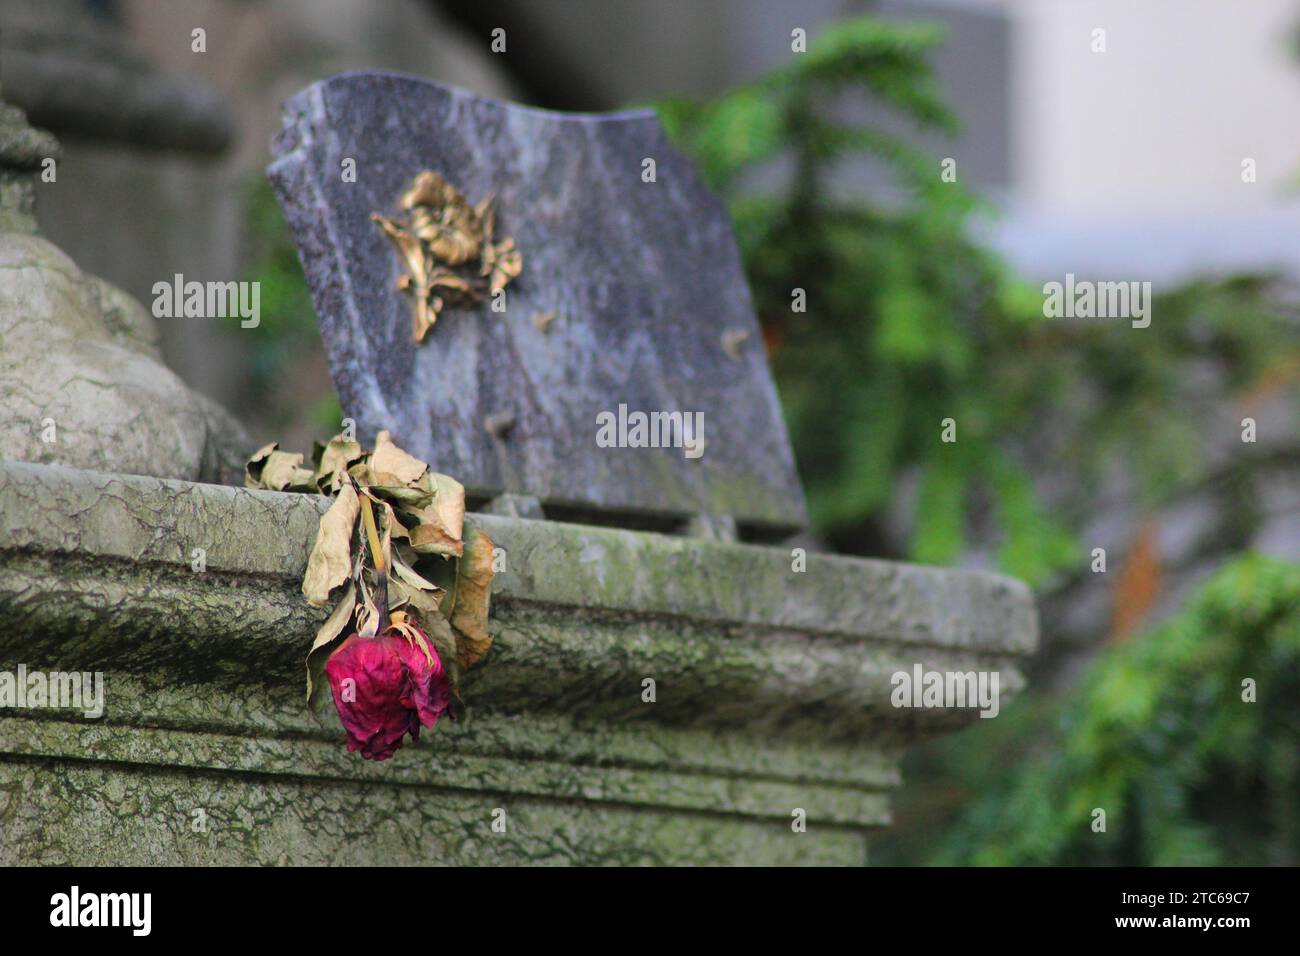 Gros plan d'une collection de pierres grises dans un cimetière, avec une rose rouge Banque D'Images